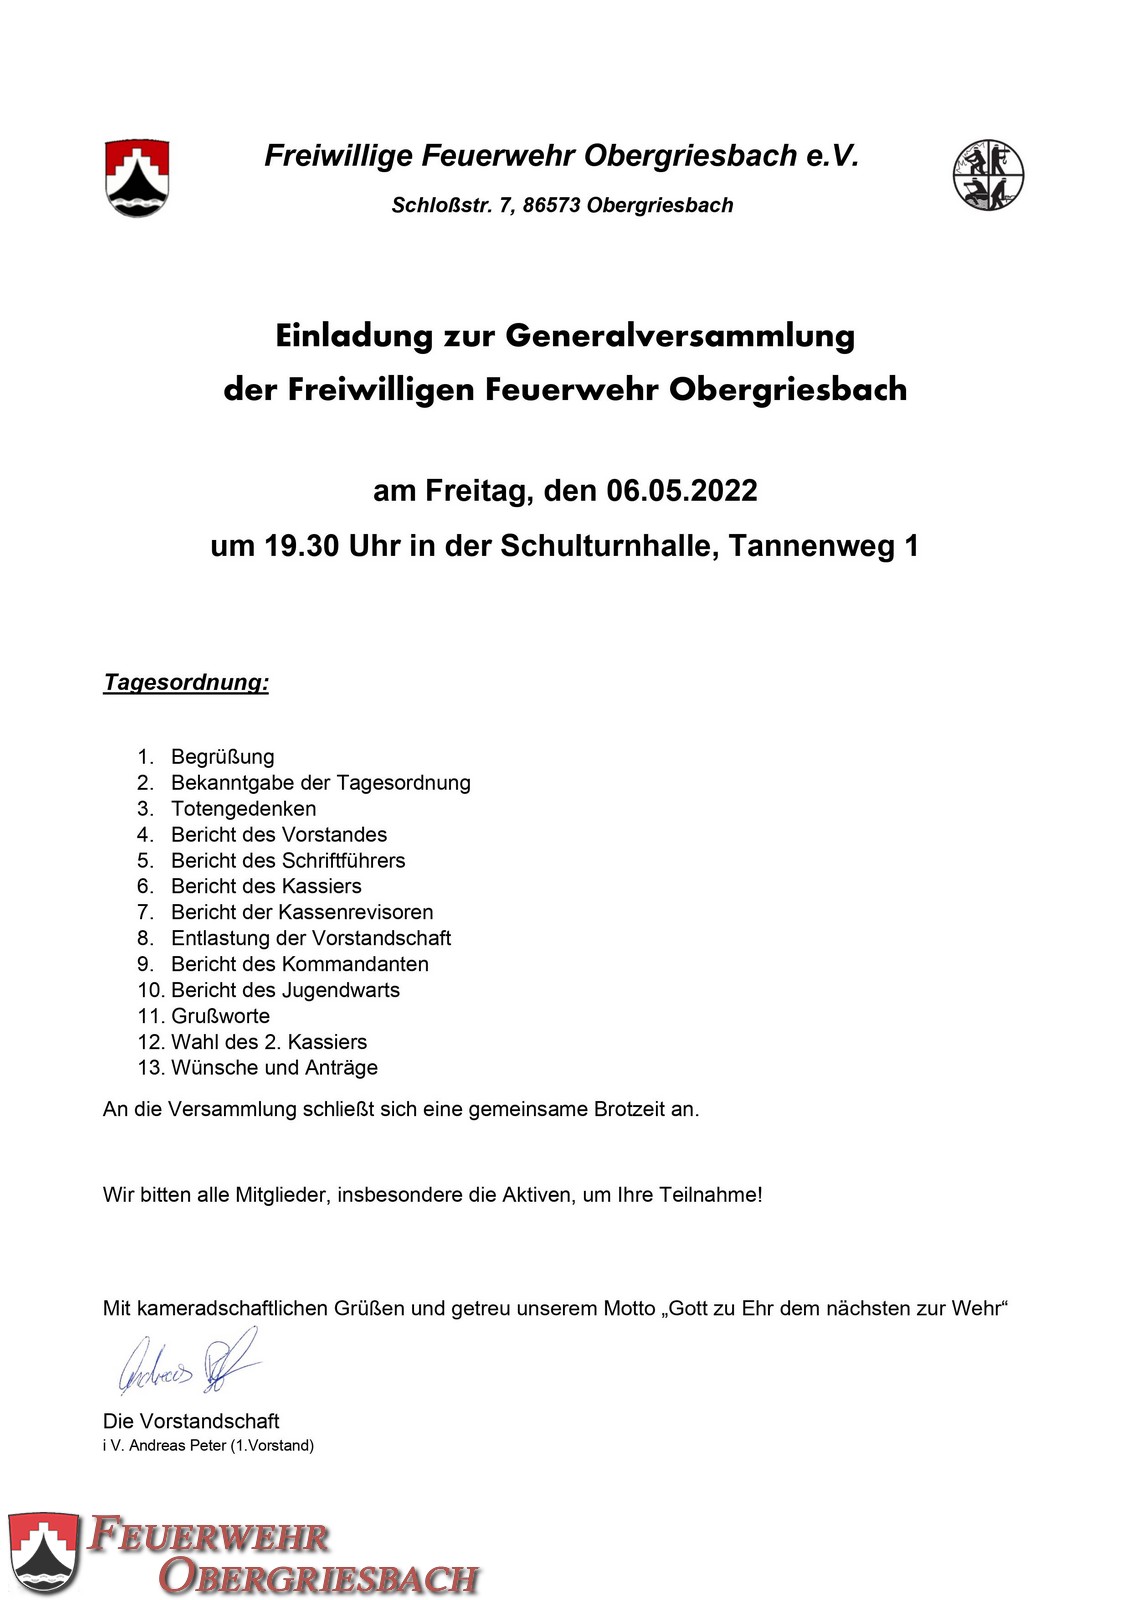 2022 04 22 Einladung Generalversammlung 2022